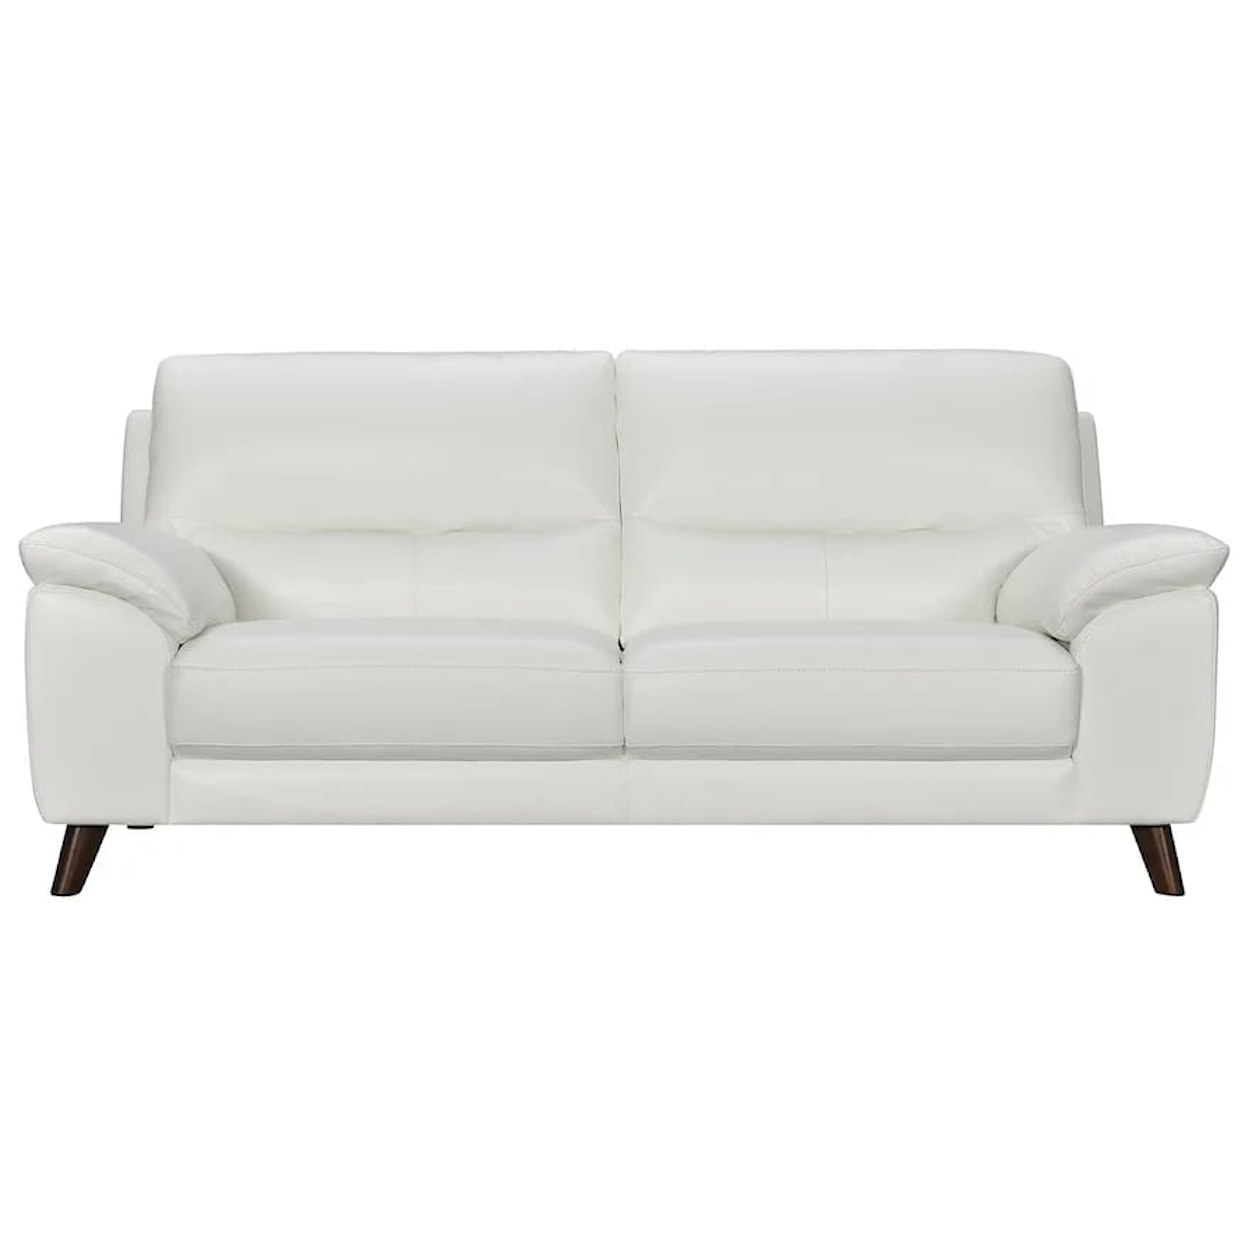 Violino 1345011 White Leather Sofa, Dunk & Bright Furniture